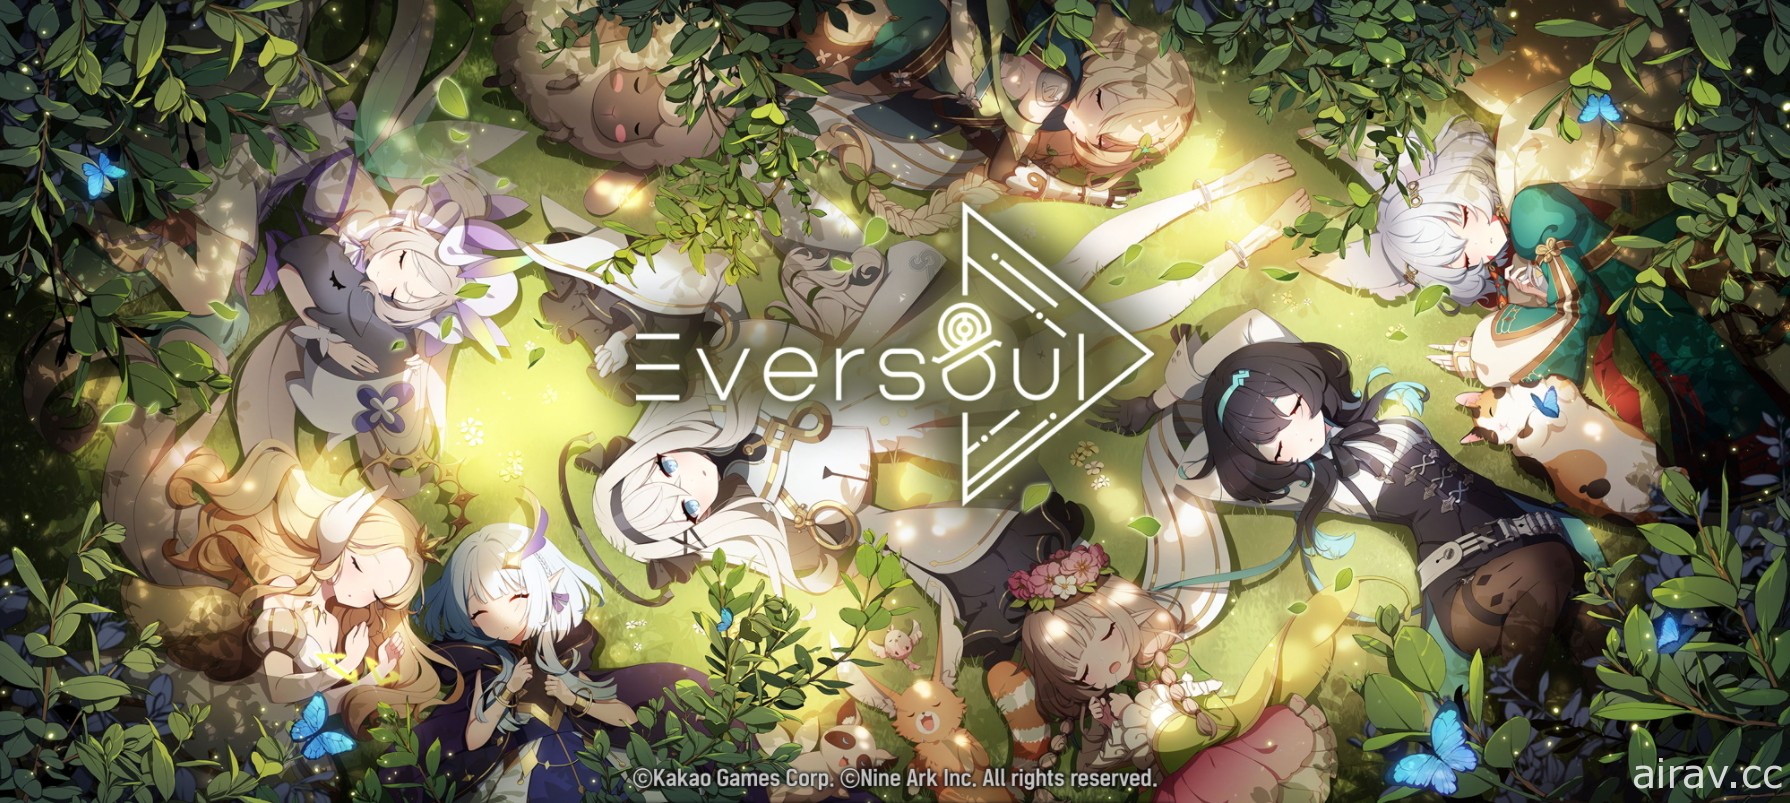 【G★2021】《Eversoul 永恒灵魂》释出全新主视觉 将于 2021 韩国 G-Star 展览展出